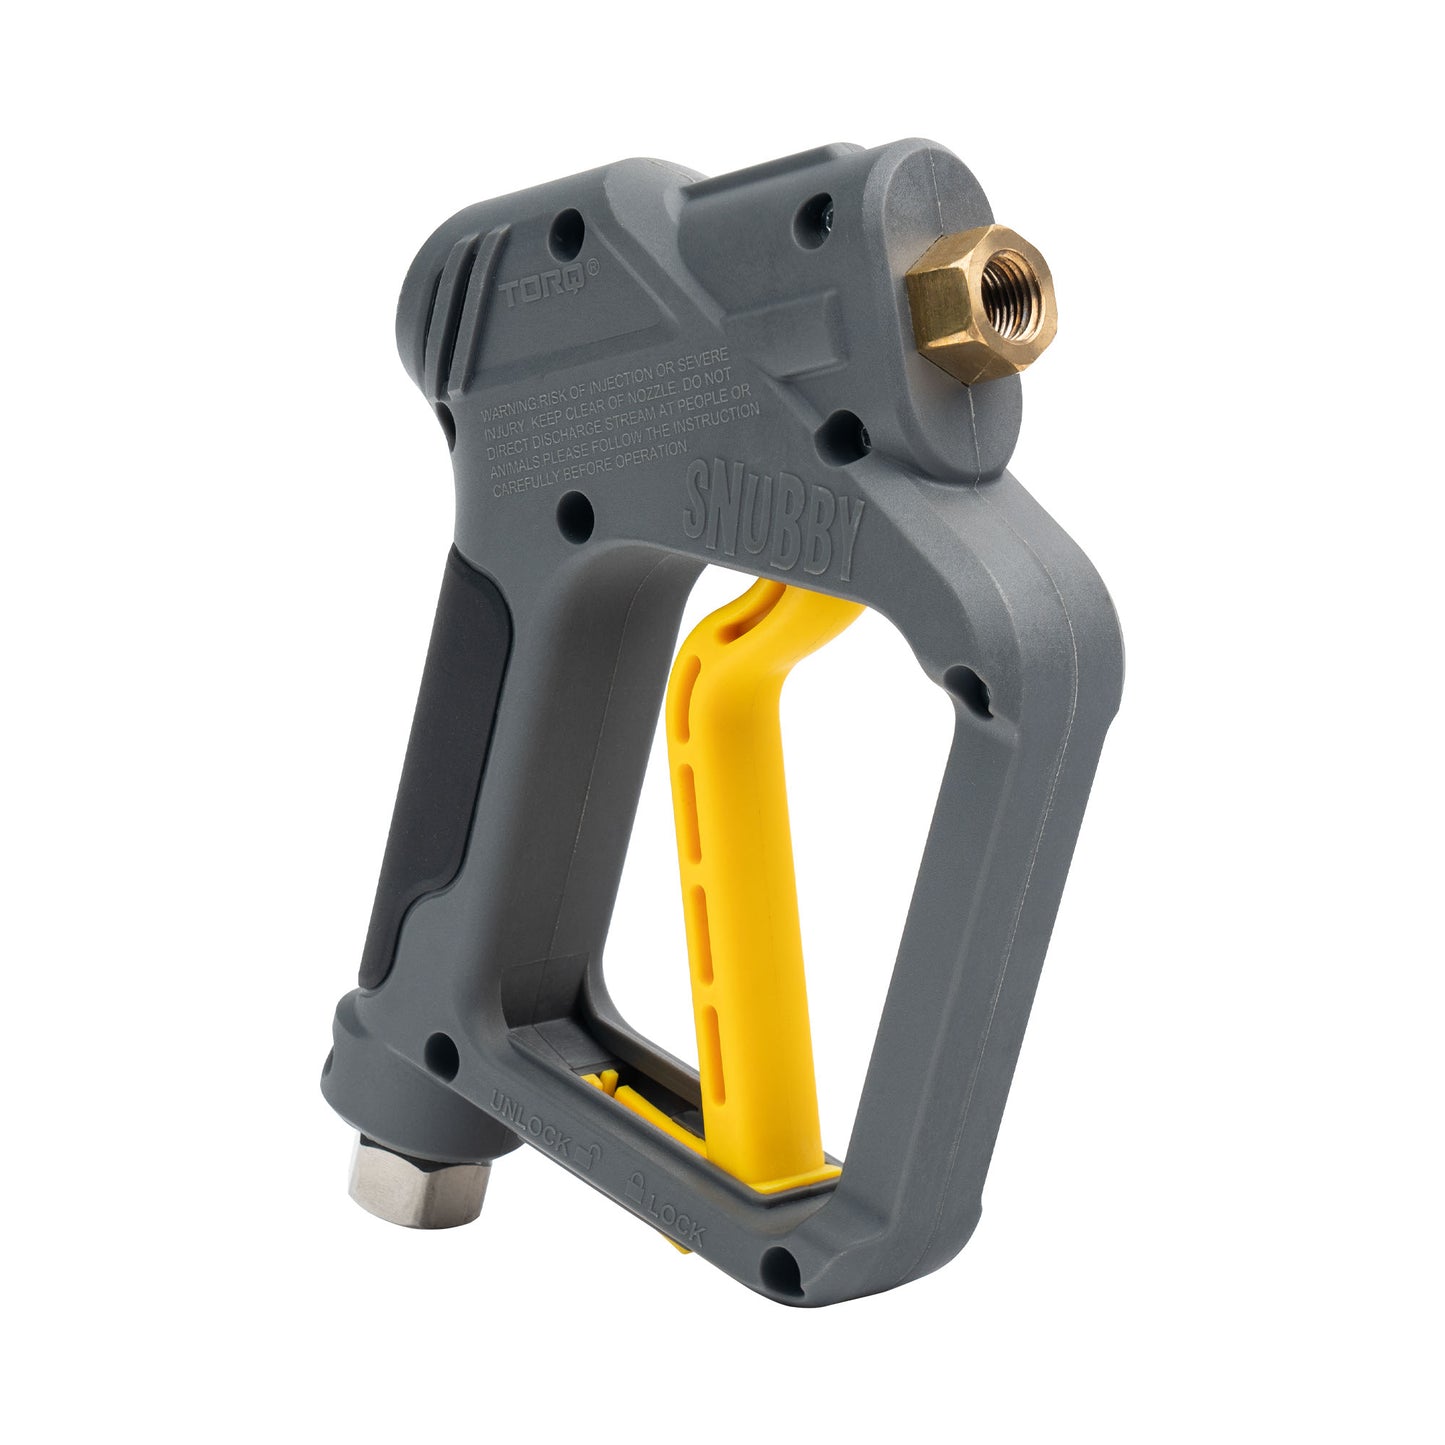 TORQ Snubby Pressure Washer Gun - Foam Cannon Attachment